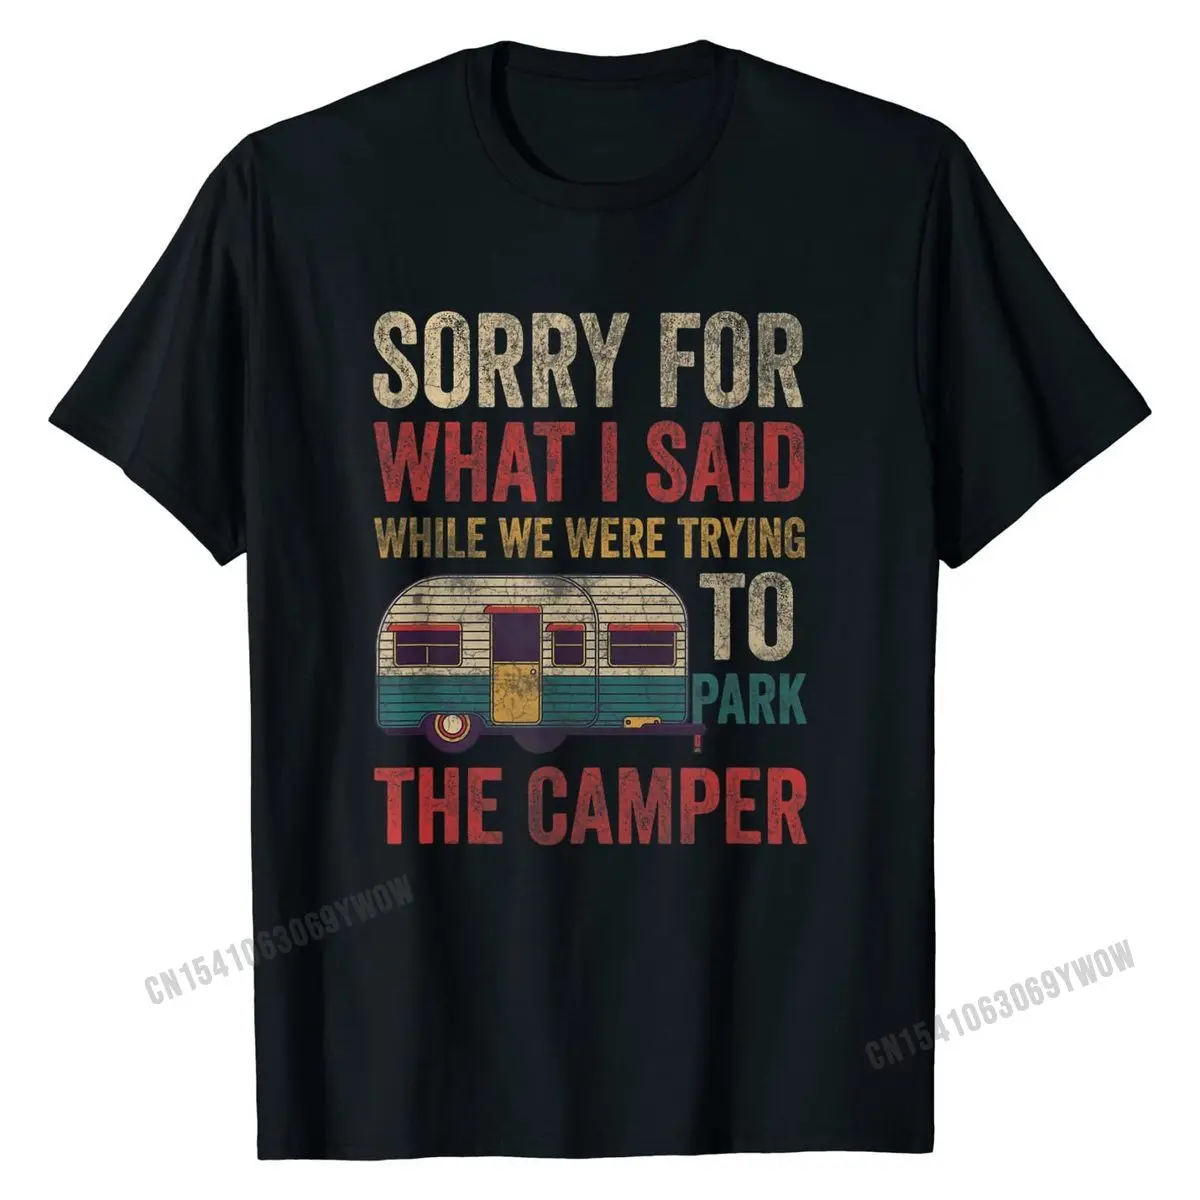 Vintage üzgünüm için ne dedi park ederken Camper RV T-Shirt komik üst T-Shirt ucuz pamuk erkekler T gömlek aile